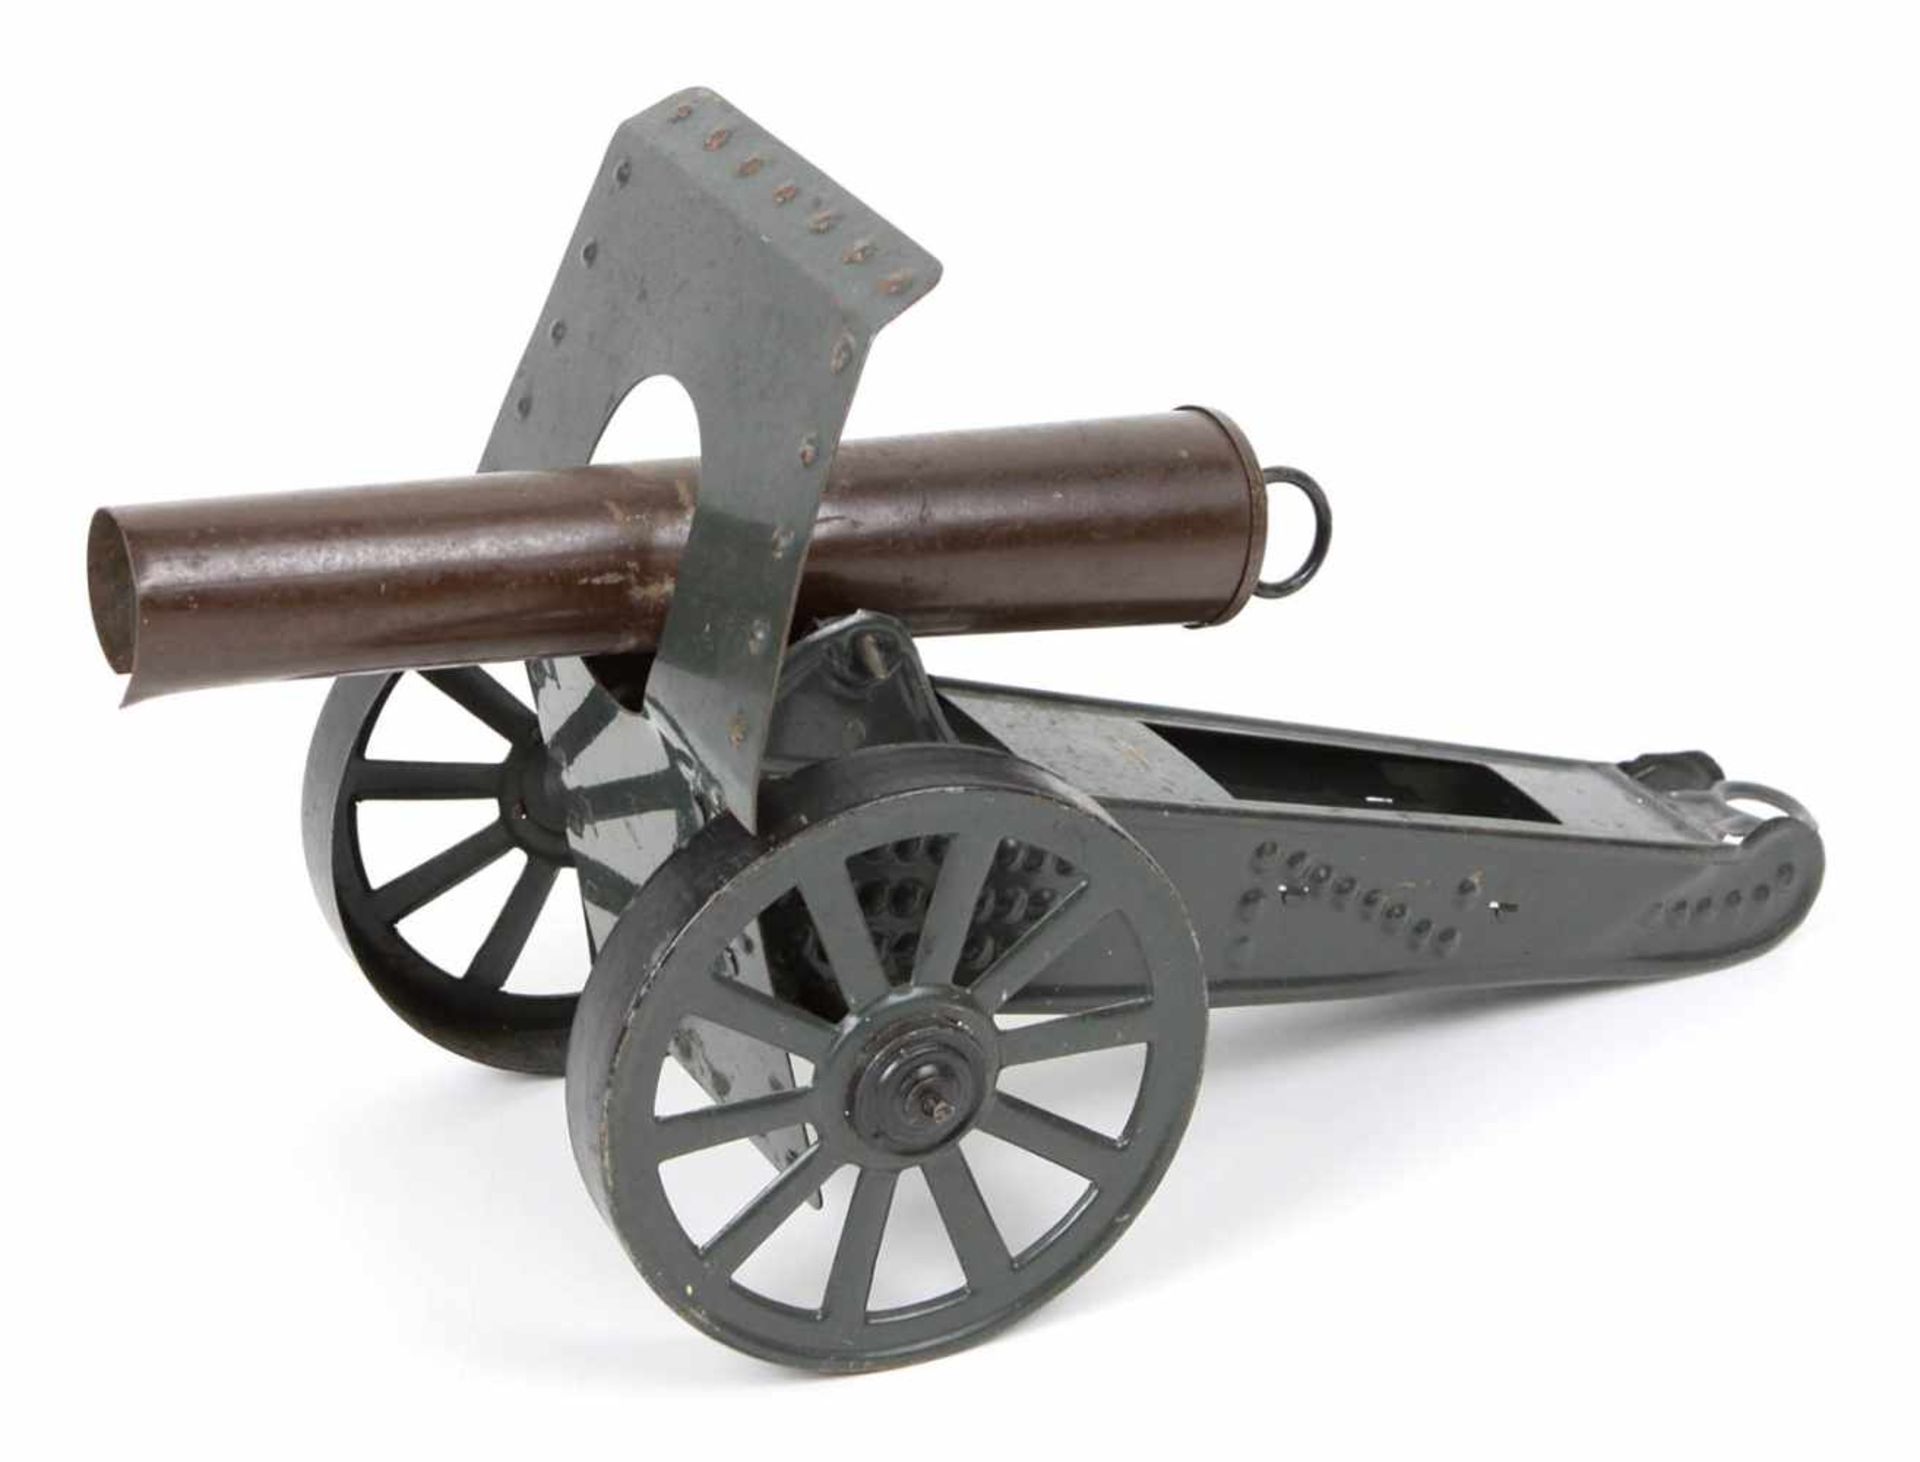 Kanone GösoBlech lackiert, Ausführung auf 2 großen Speichenrädern, L ca. 35 cm, H ca. 19 cm,